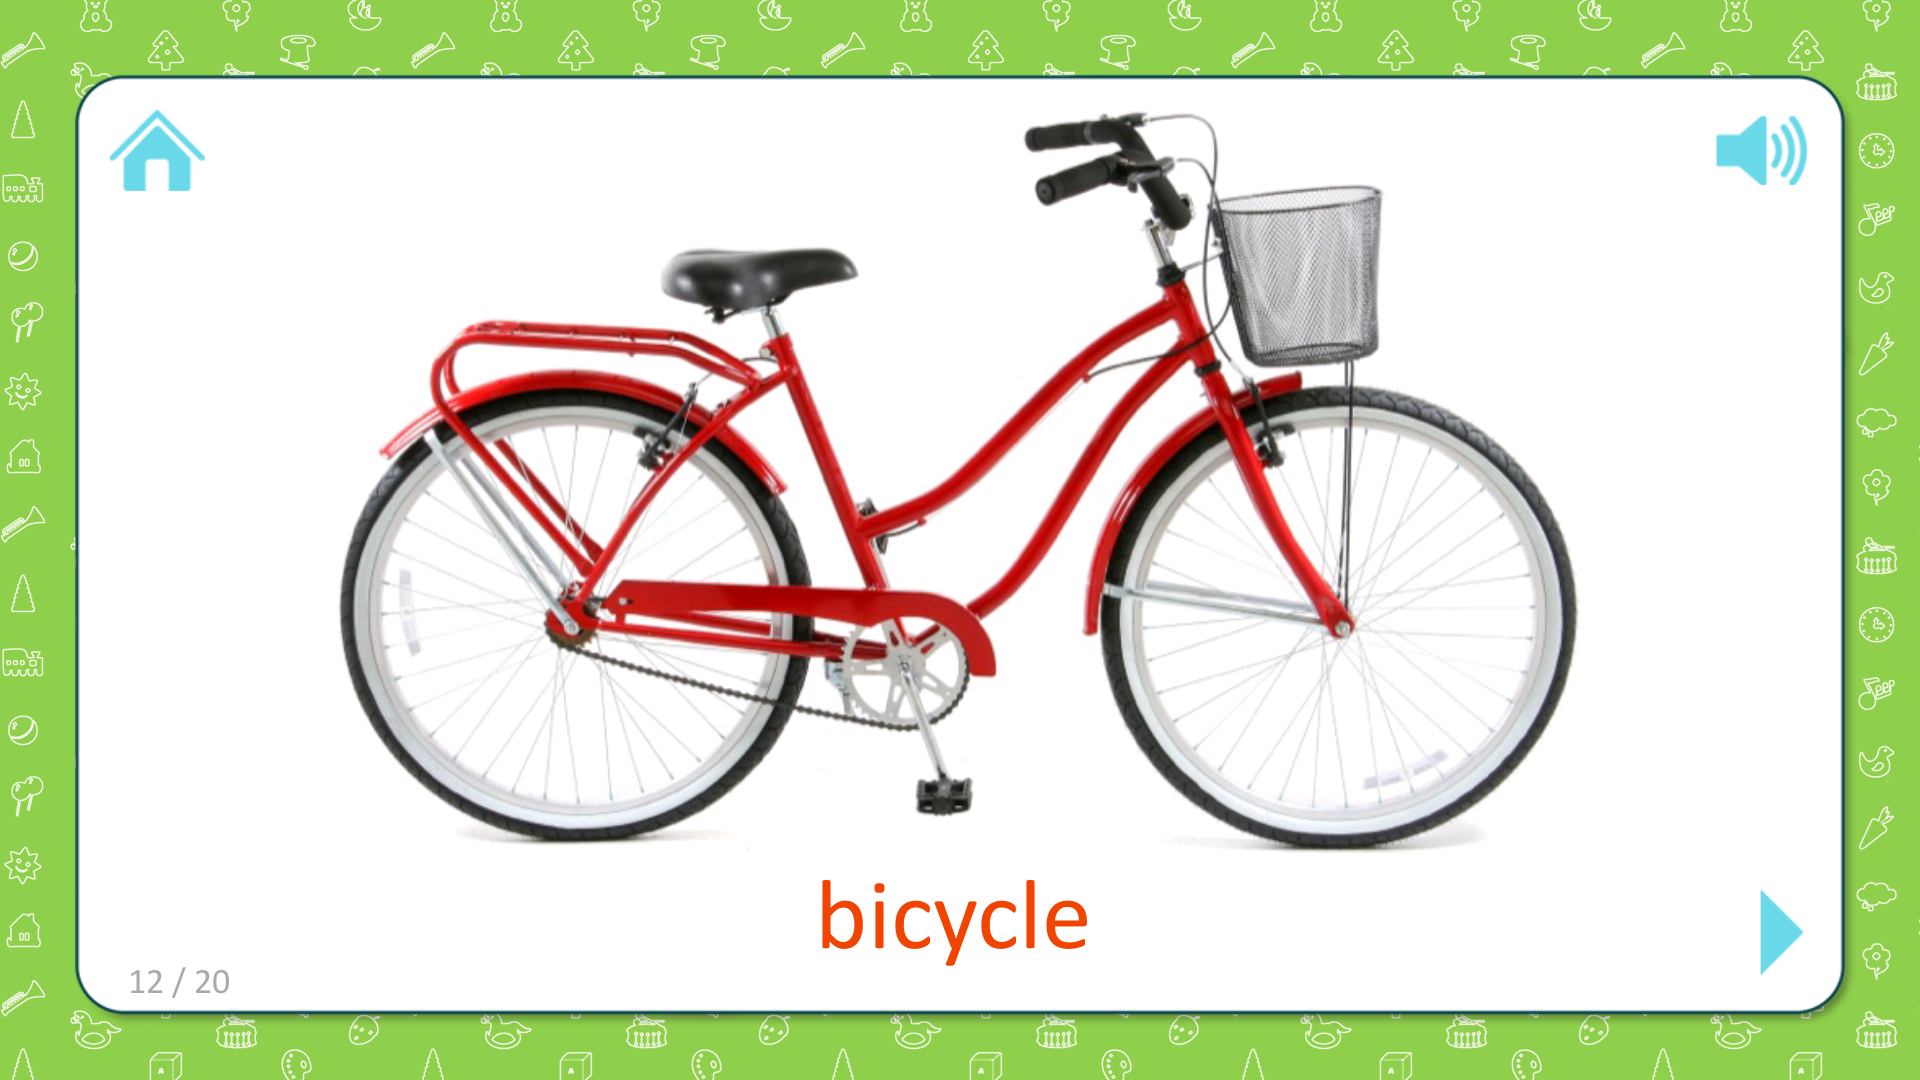 Велосипед вид транспорта. Велосипед на английском языке. Карточки по английскому языку велосипед. Велосипед карточка. Bike на русский язык